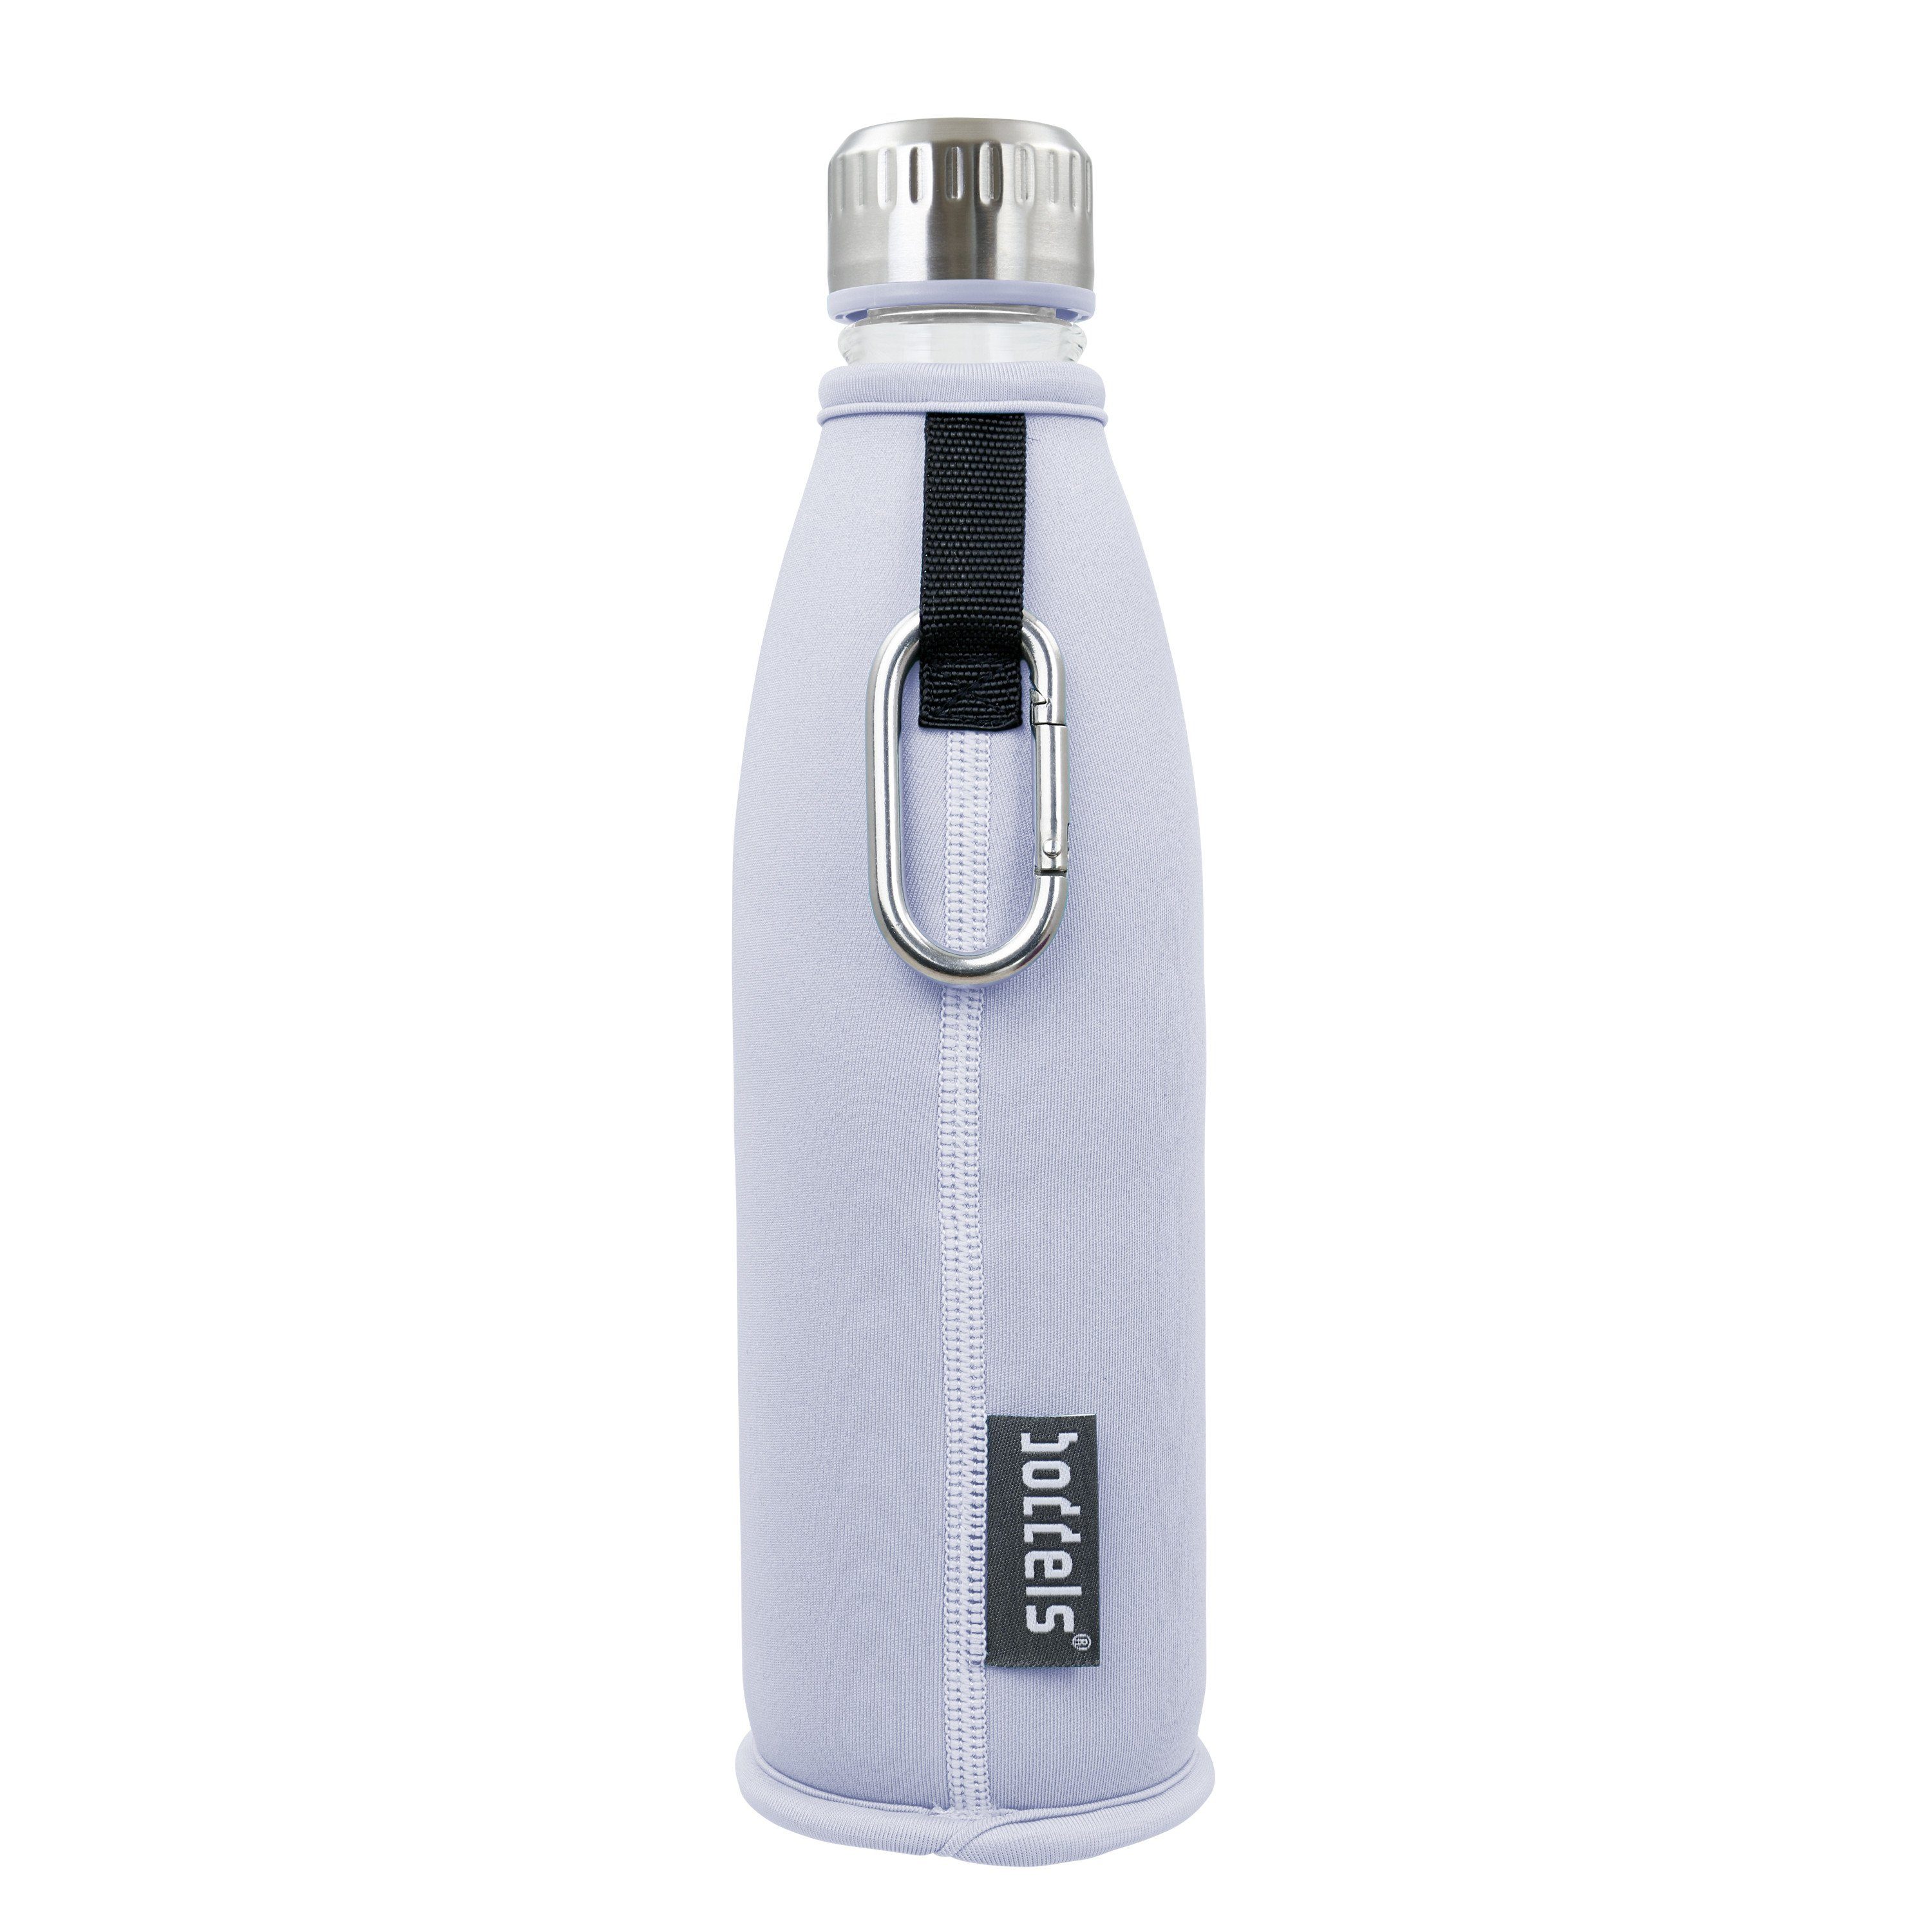 DREE doppelwandig, Flasche boddels auslaufsicher, Glas aus Lavendelblau 650ml, Trinkflasche bruchfest